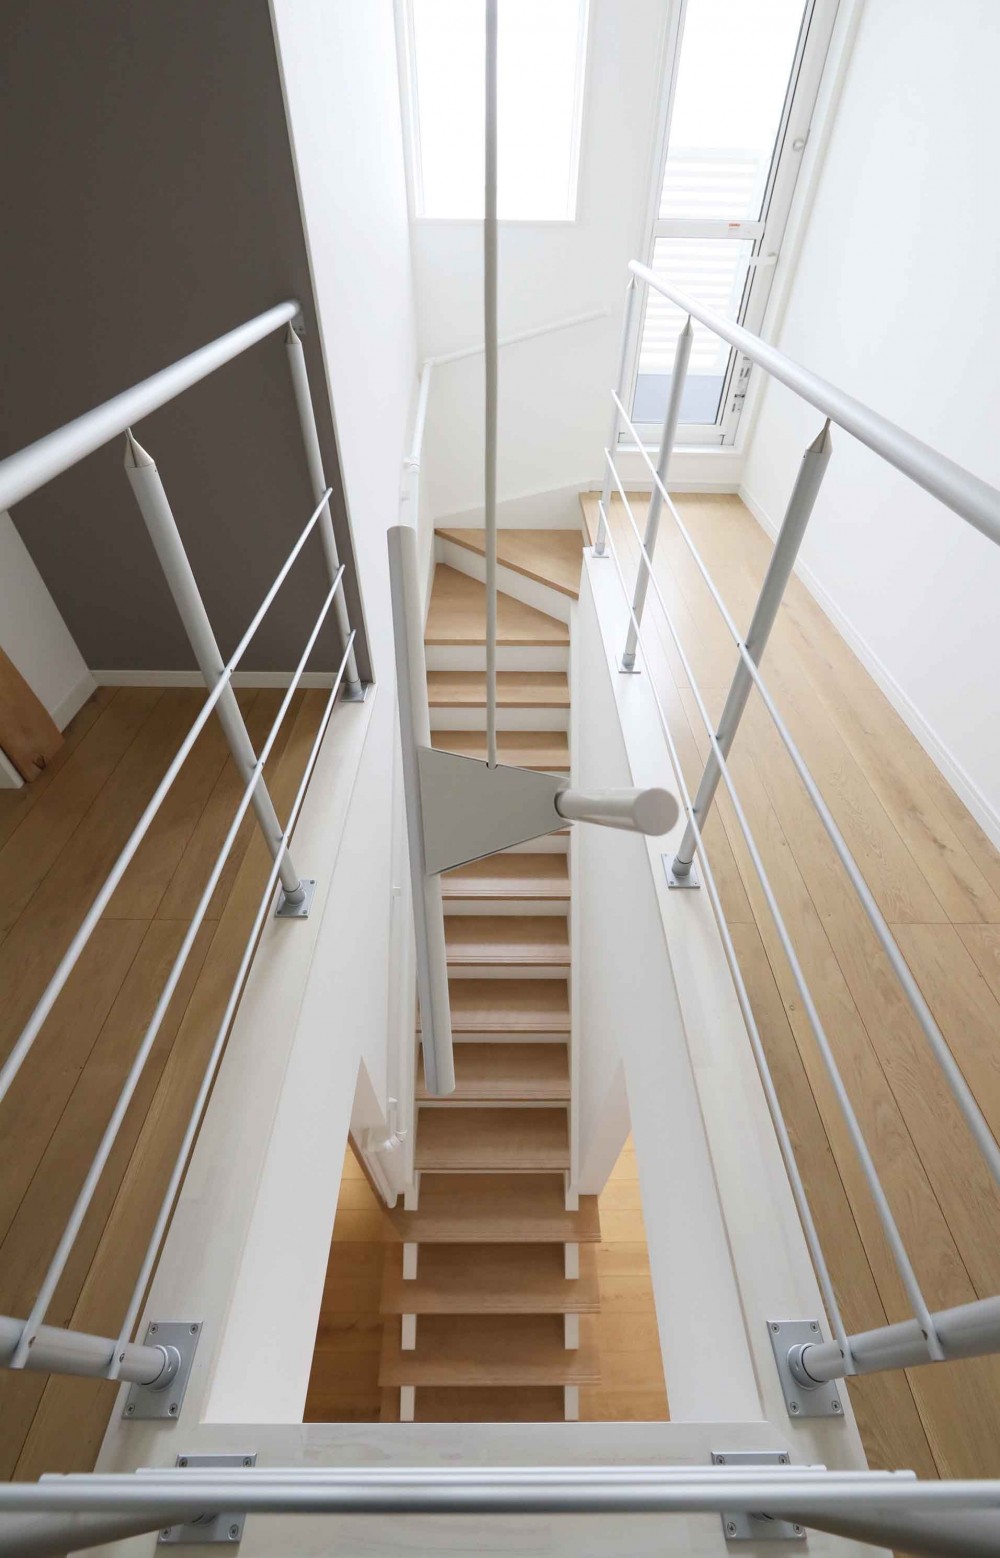 ファーバルデザイン一級建築士事務所「エアコン1台で家じゅう快適。デザイン性の高い高気密・高断熱の家。」